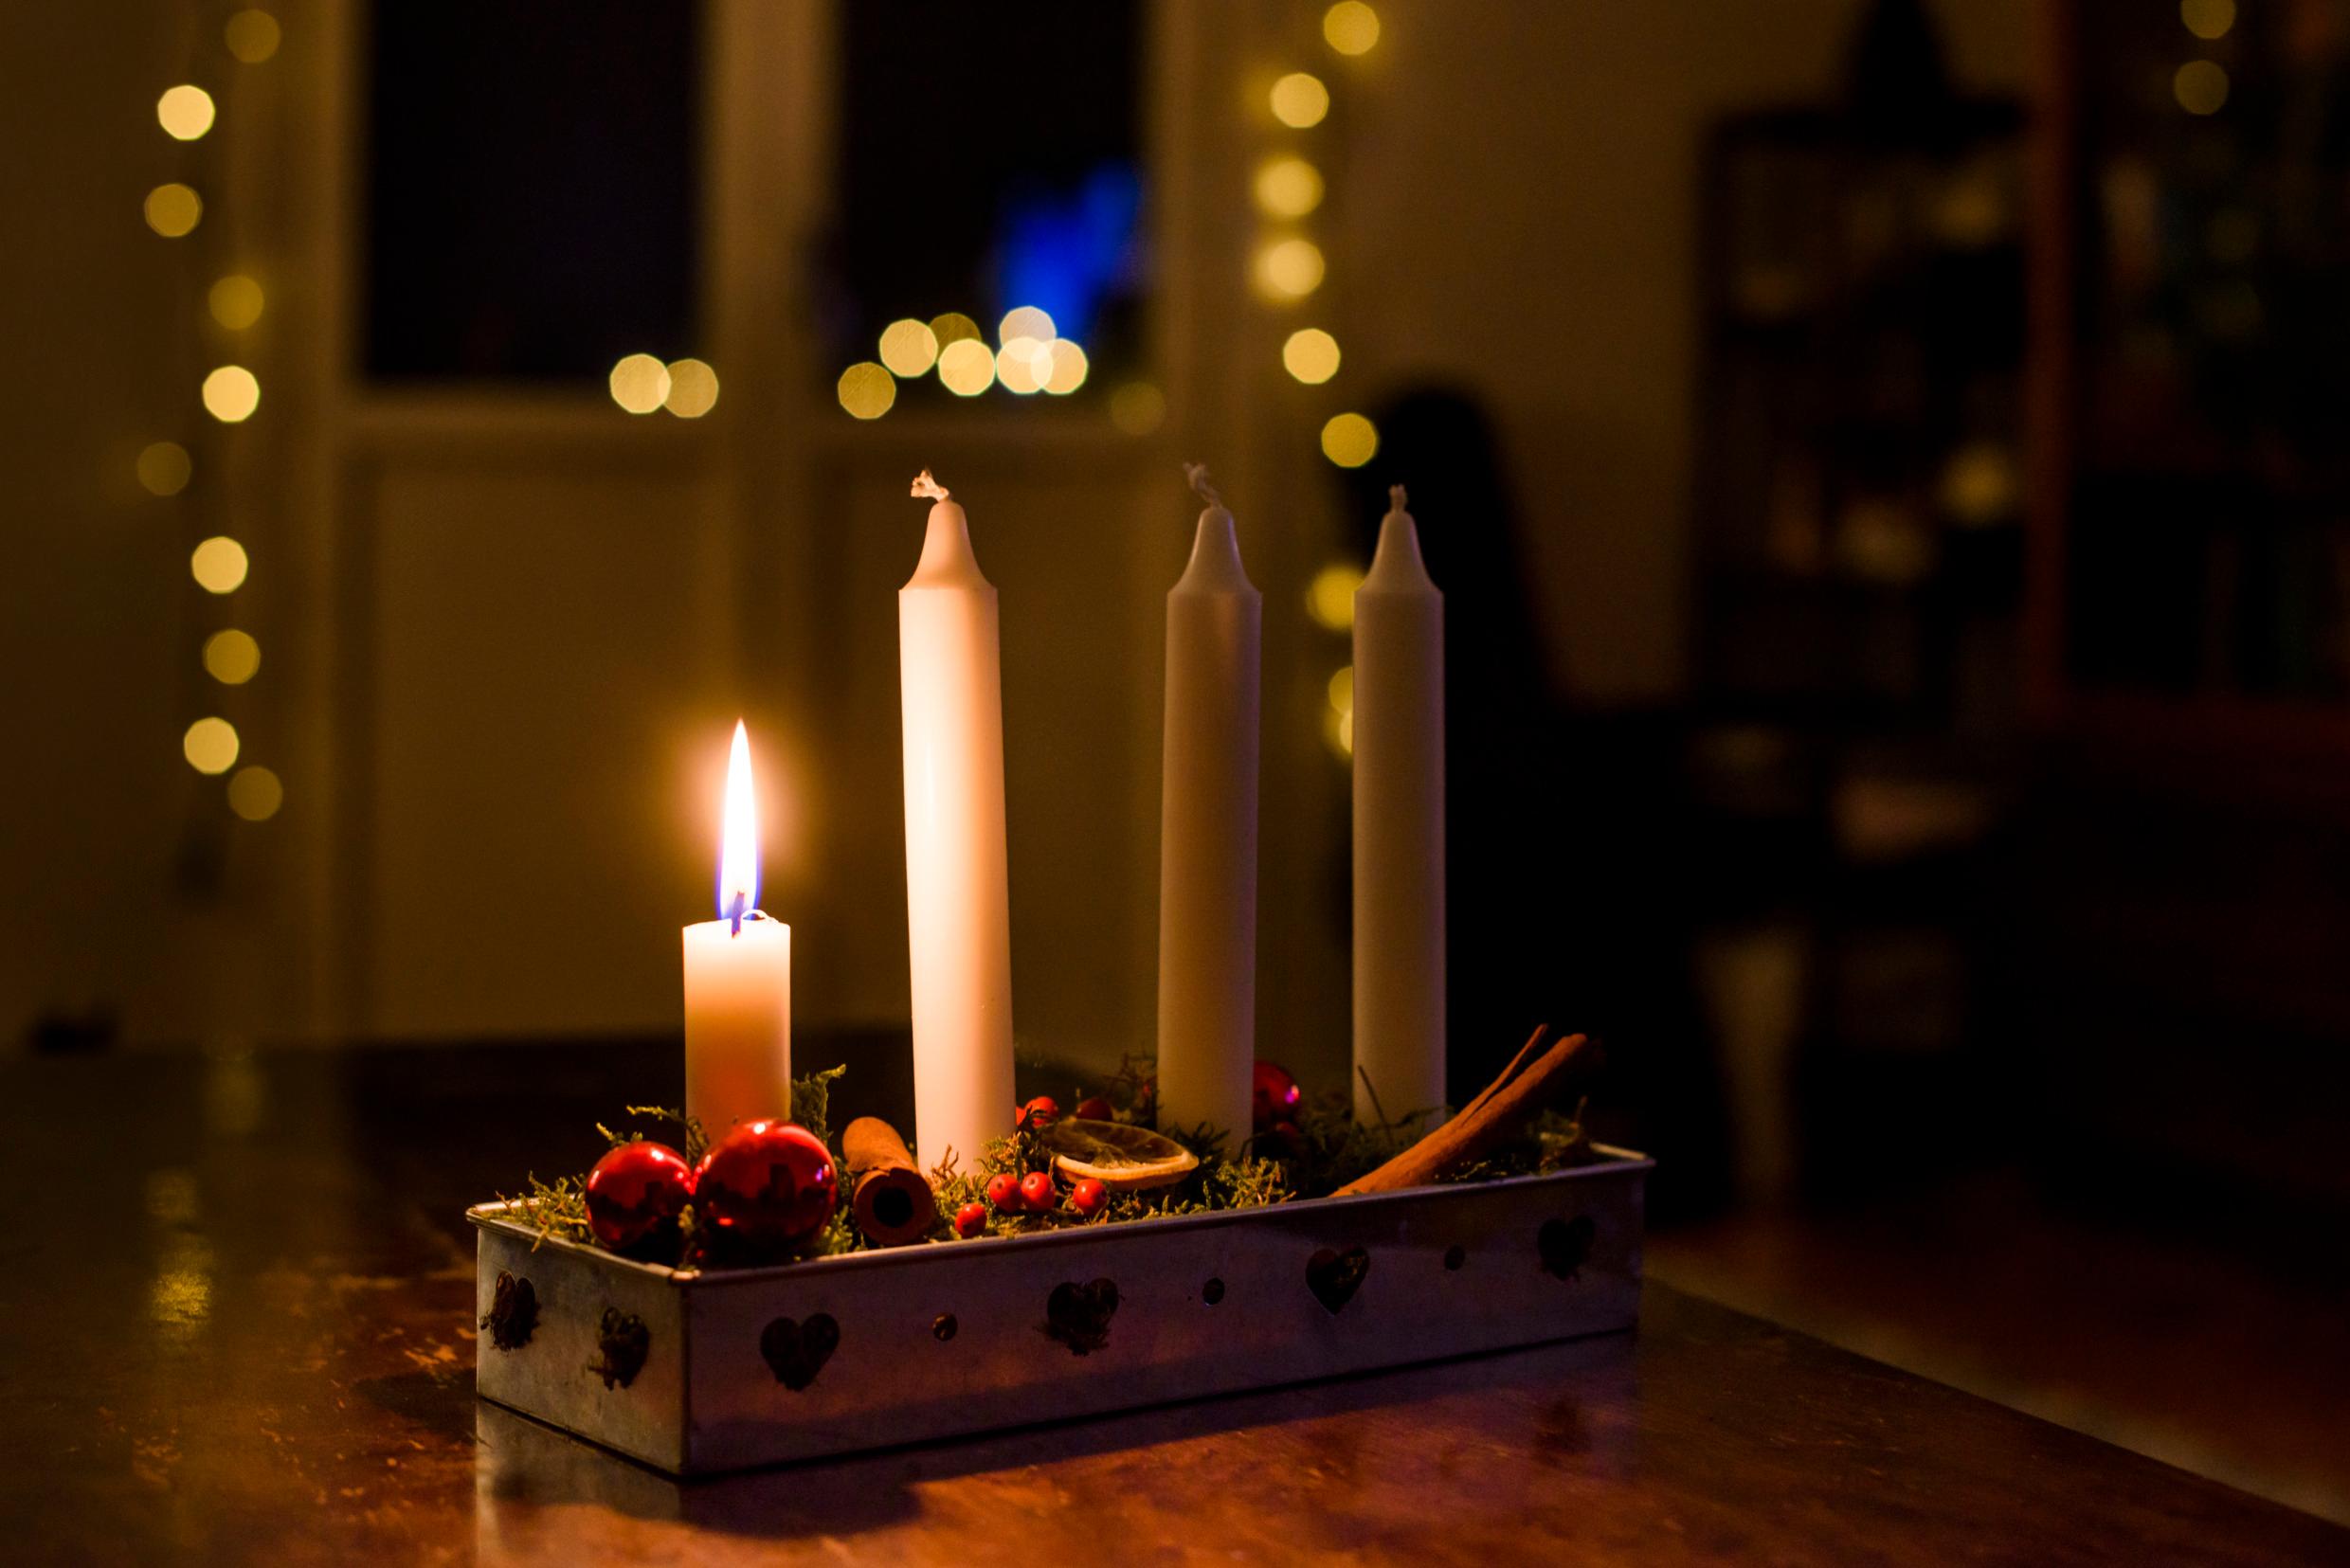 Специальный подсвечник, в котором каждое воскресенье, до самого Рождества. загорается новая свеча.